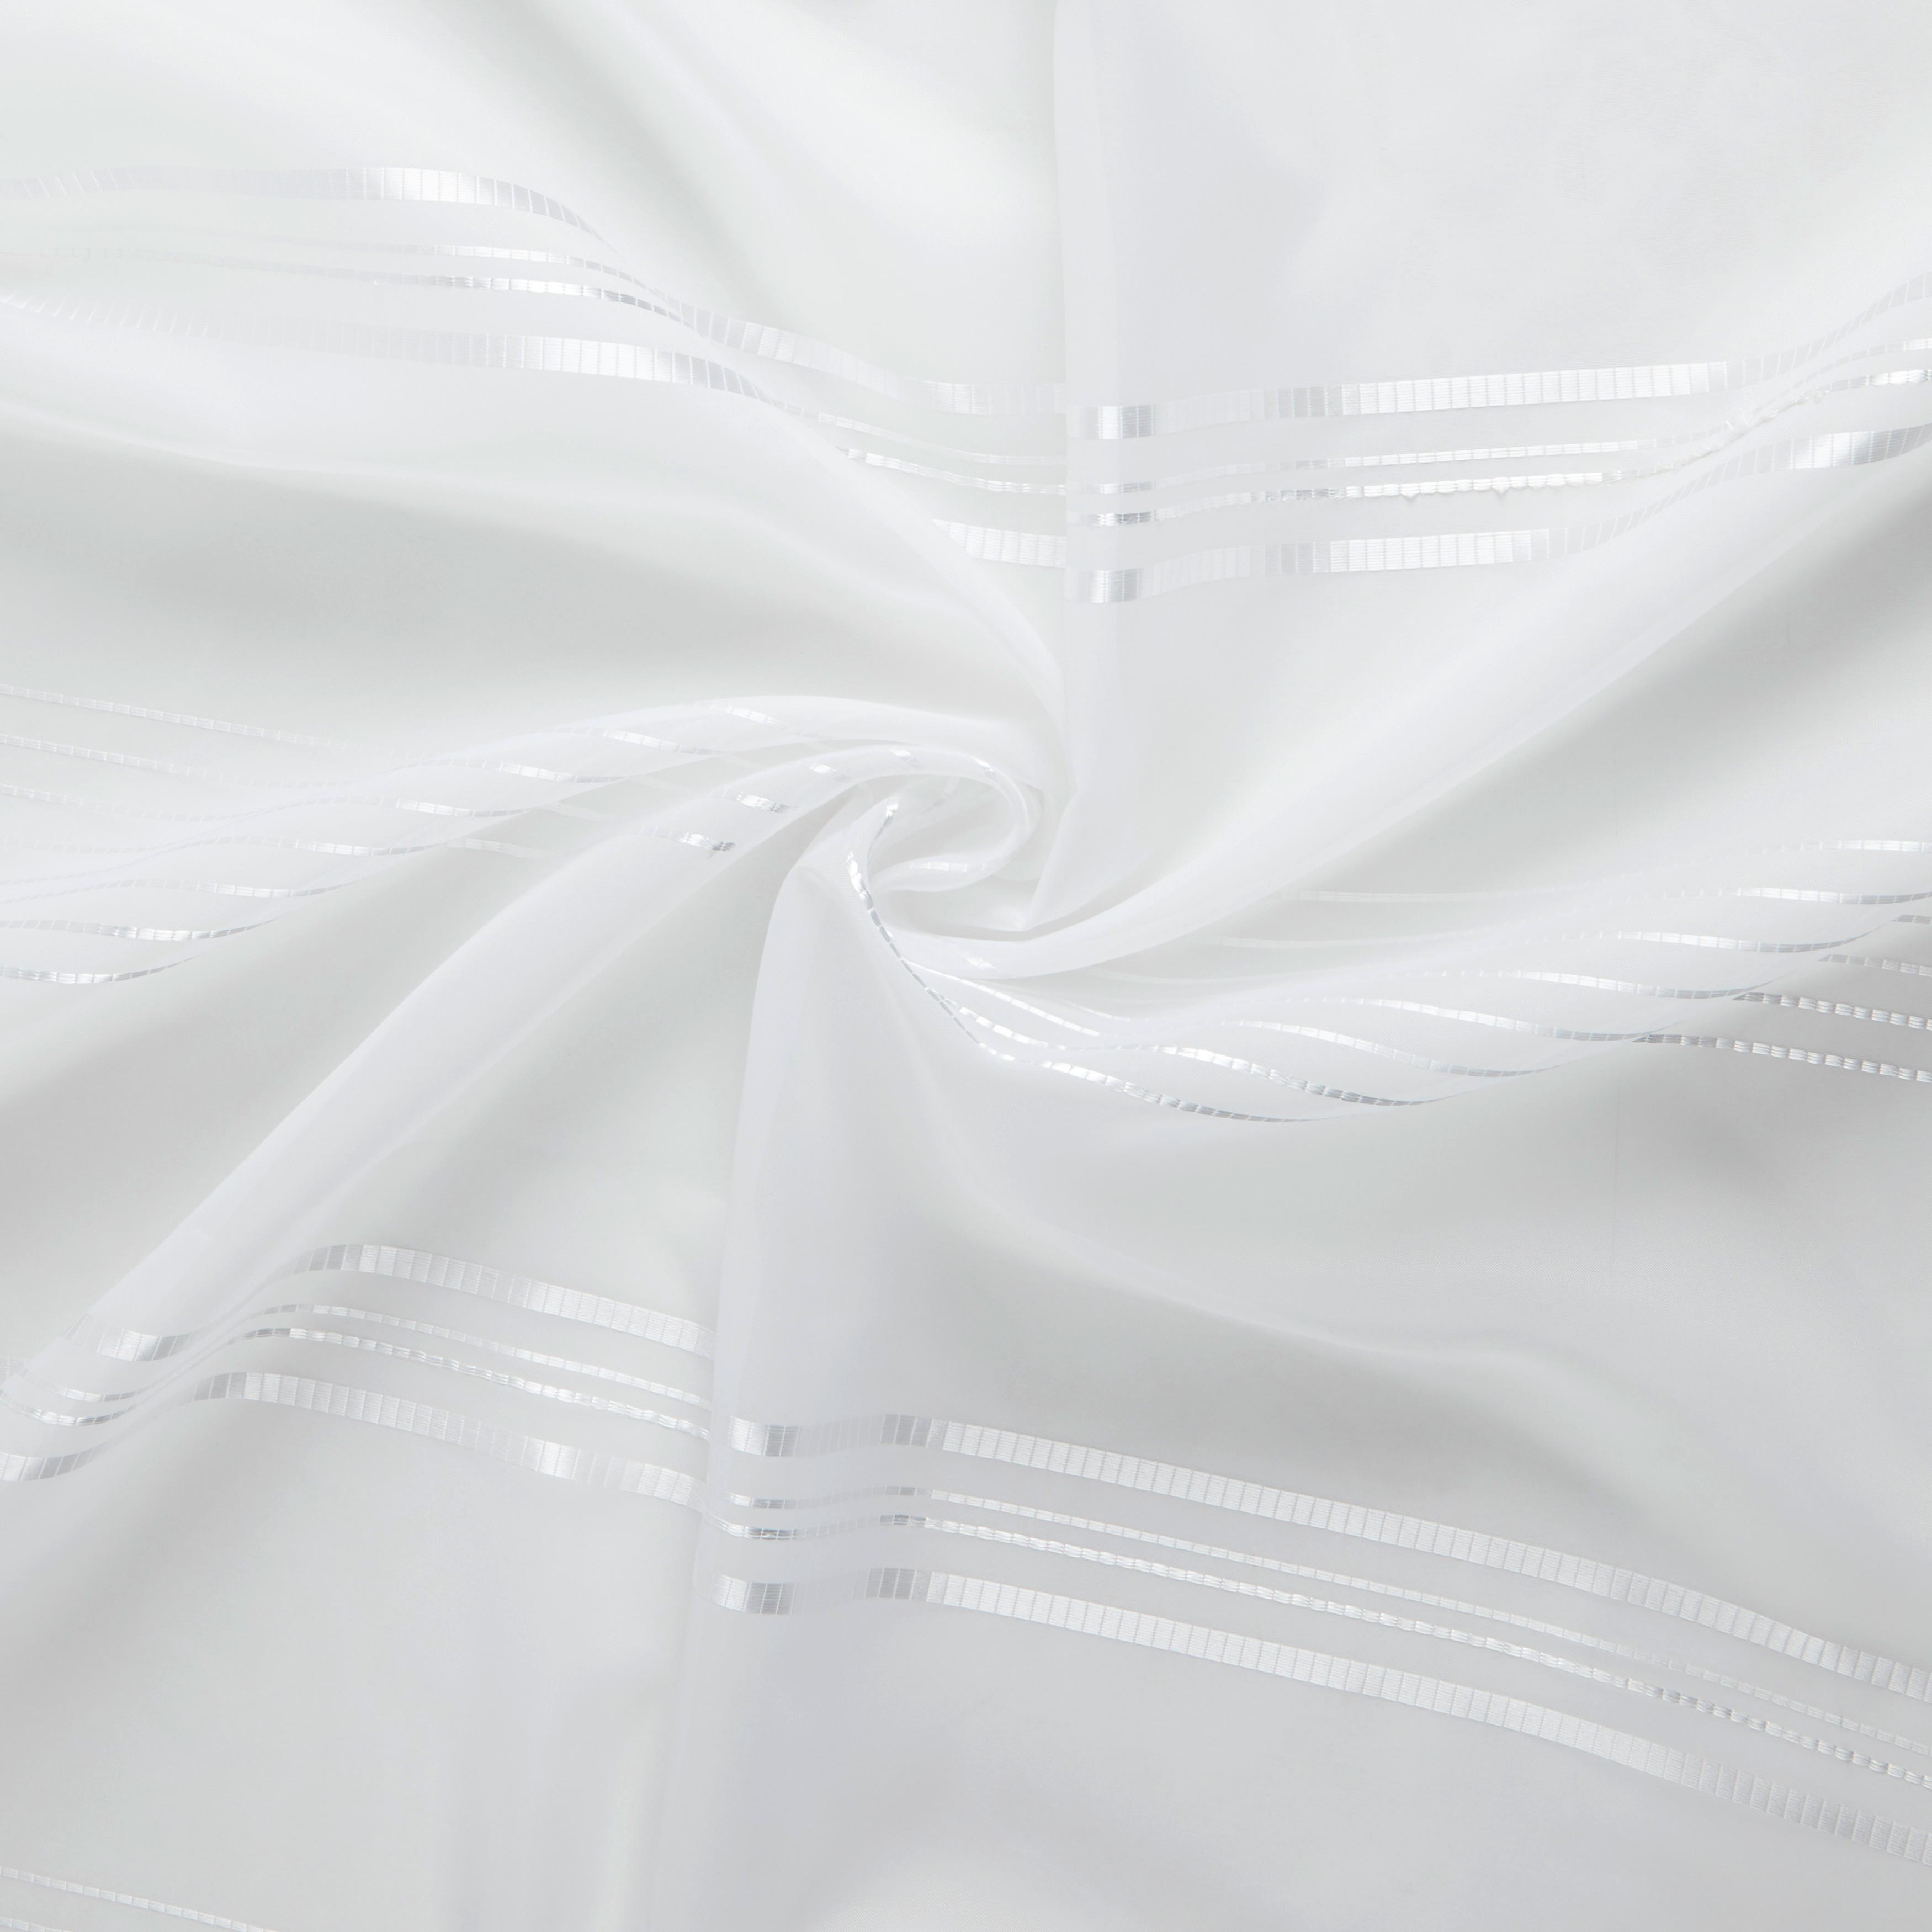 Készfüggöny Louis 140/245 - Fehér, konvencionális, Textil (140/245cm) - Modern Living